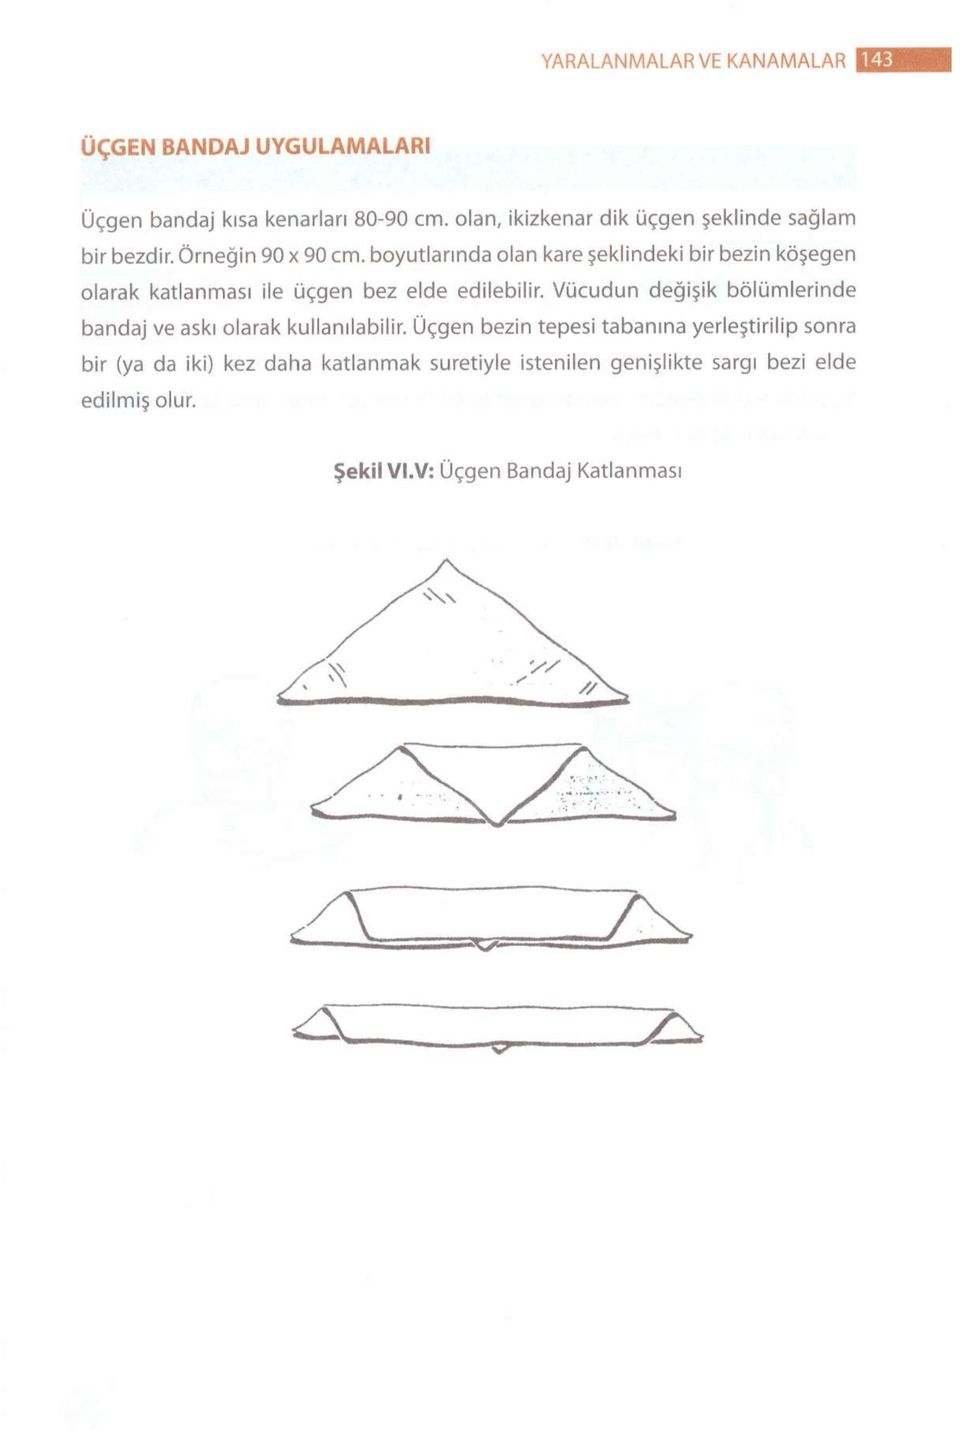 boyutlarında olan kare şeklindeki bir bezin köşegen olarak katlanması ile üçgen bez elde edilebilir.